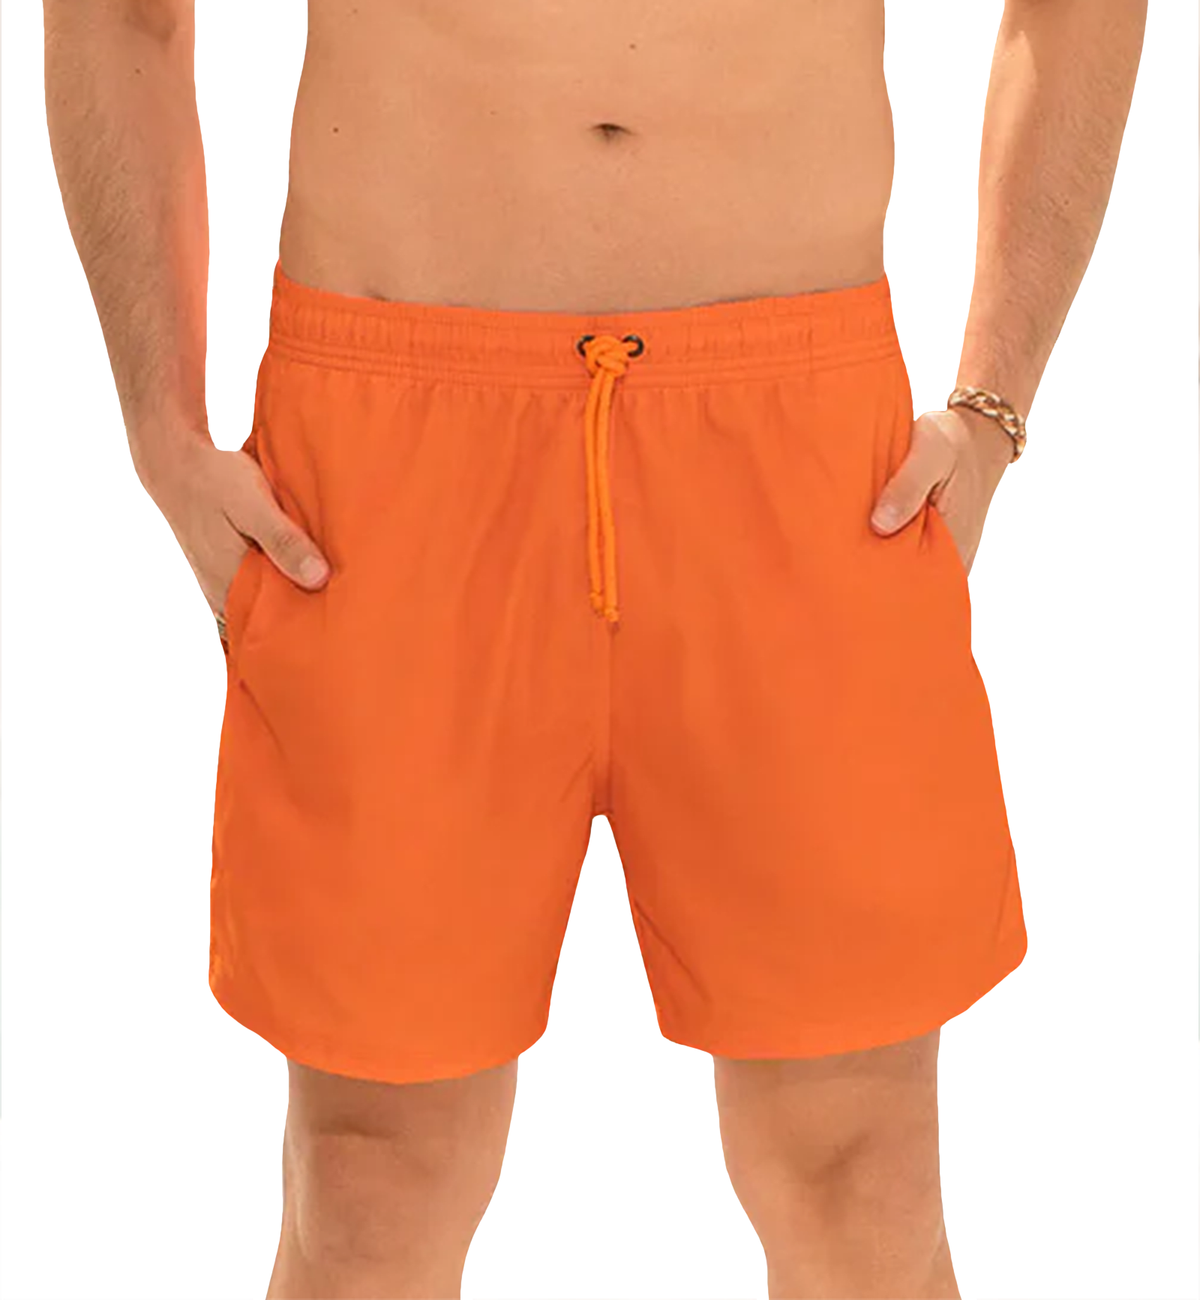 LEO Men&#39;s Eco-Friendly Quick Dry 7 inch Swim Trunk (505033),Small,Orange - Orange,Small